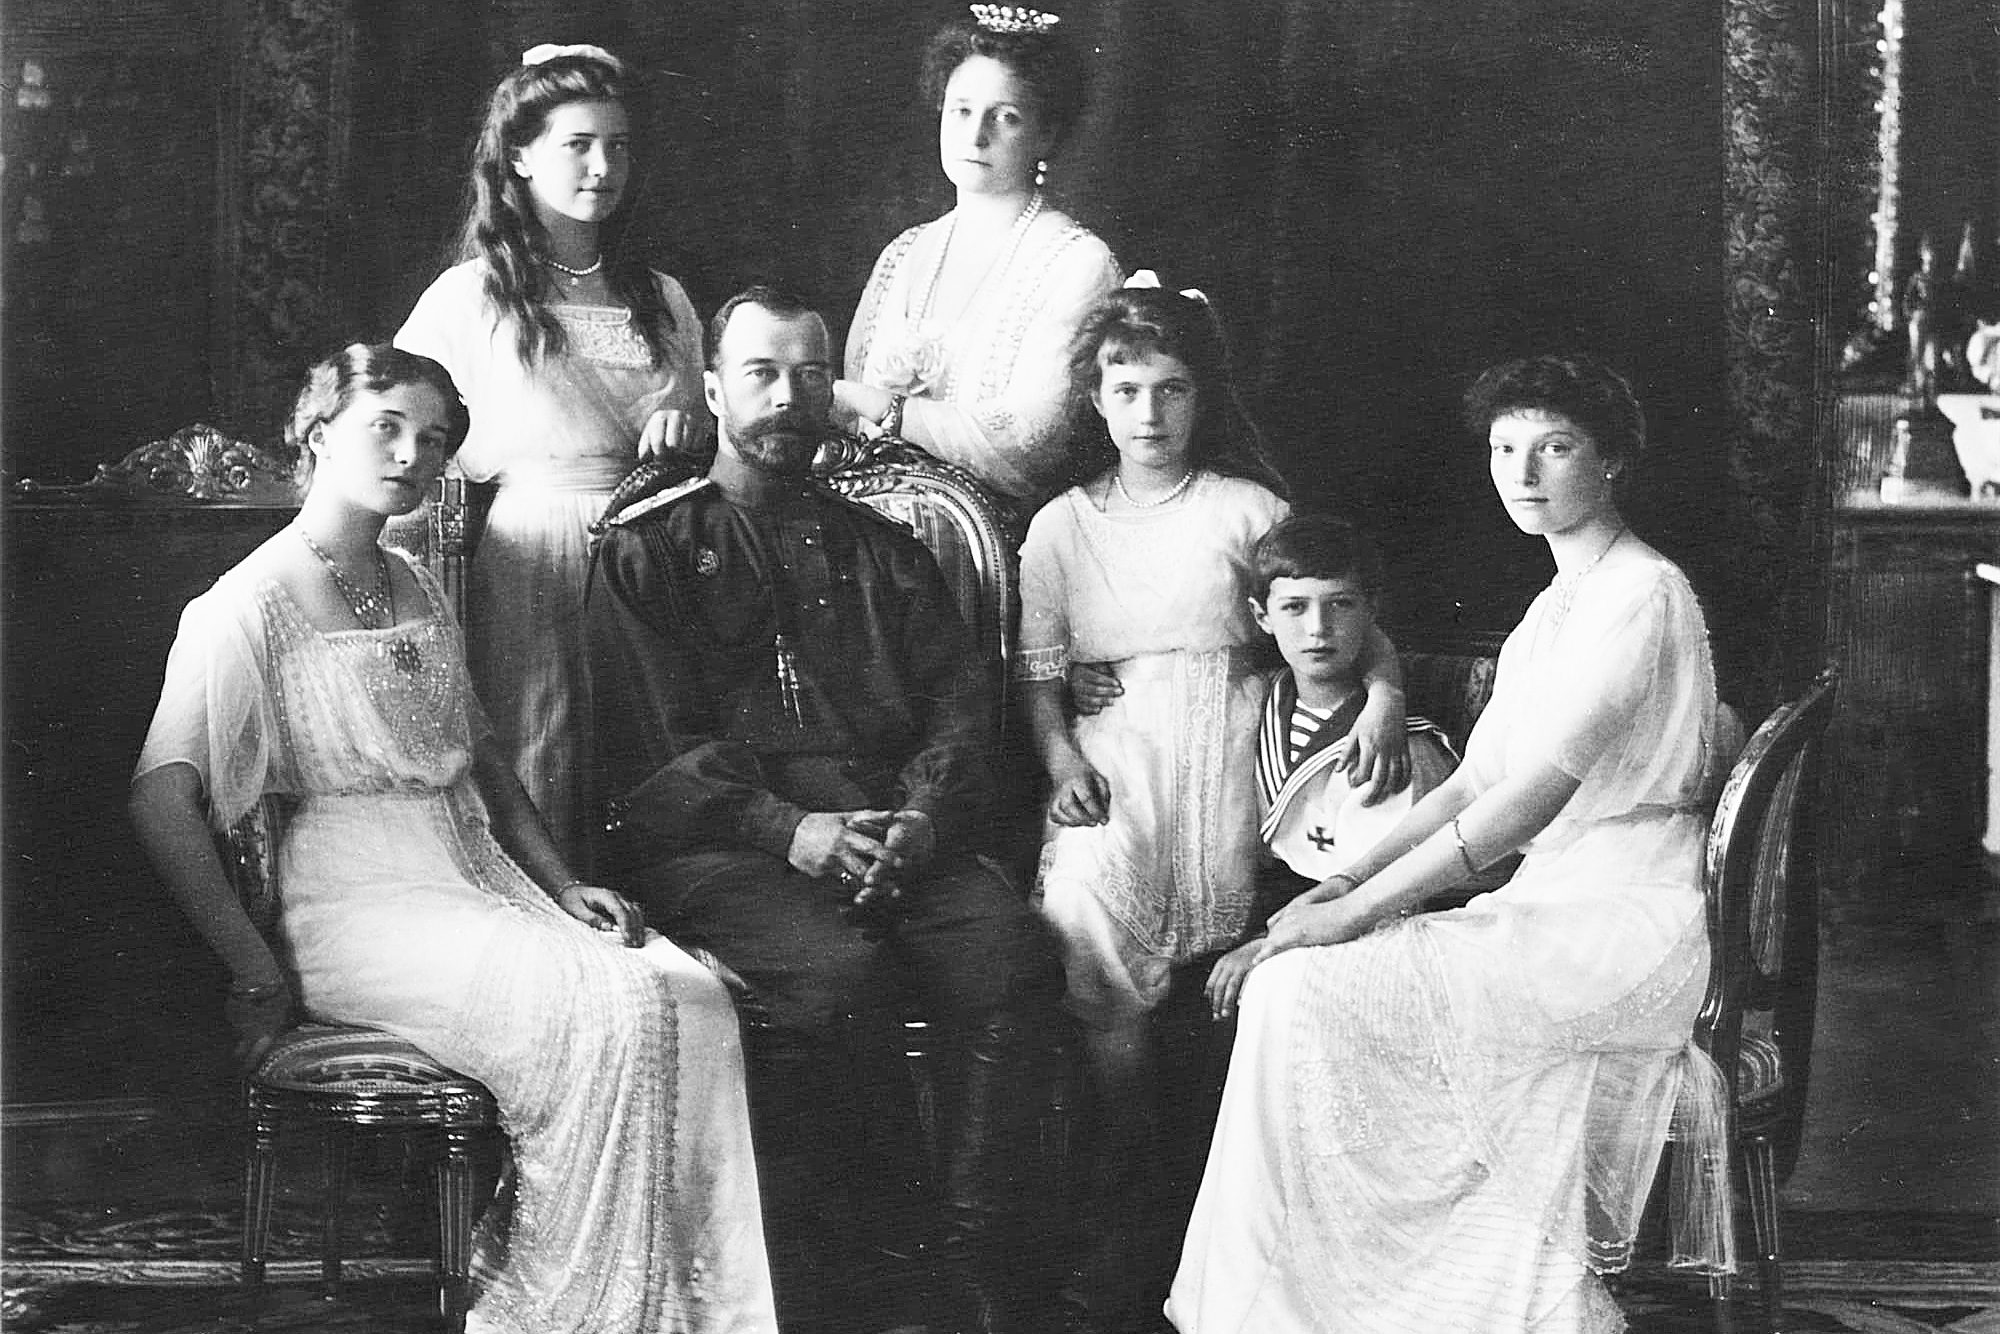 Restos mortais da família do tsar foram encontrados entre 1991 e  2007, o que gerou uma onda de farsantes.